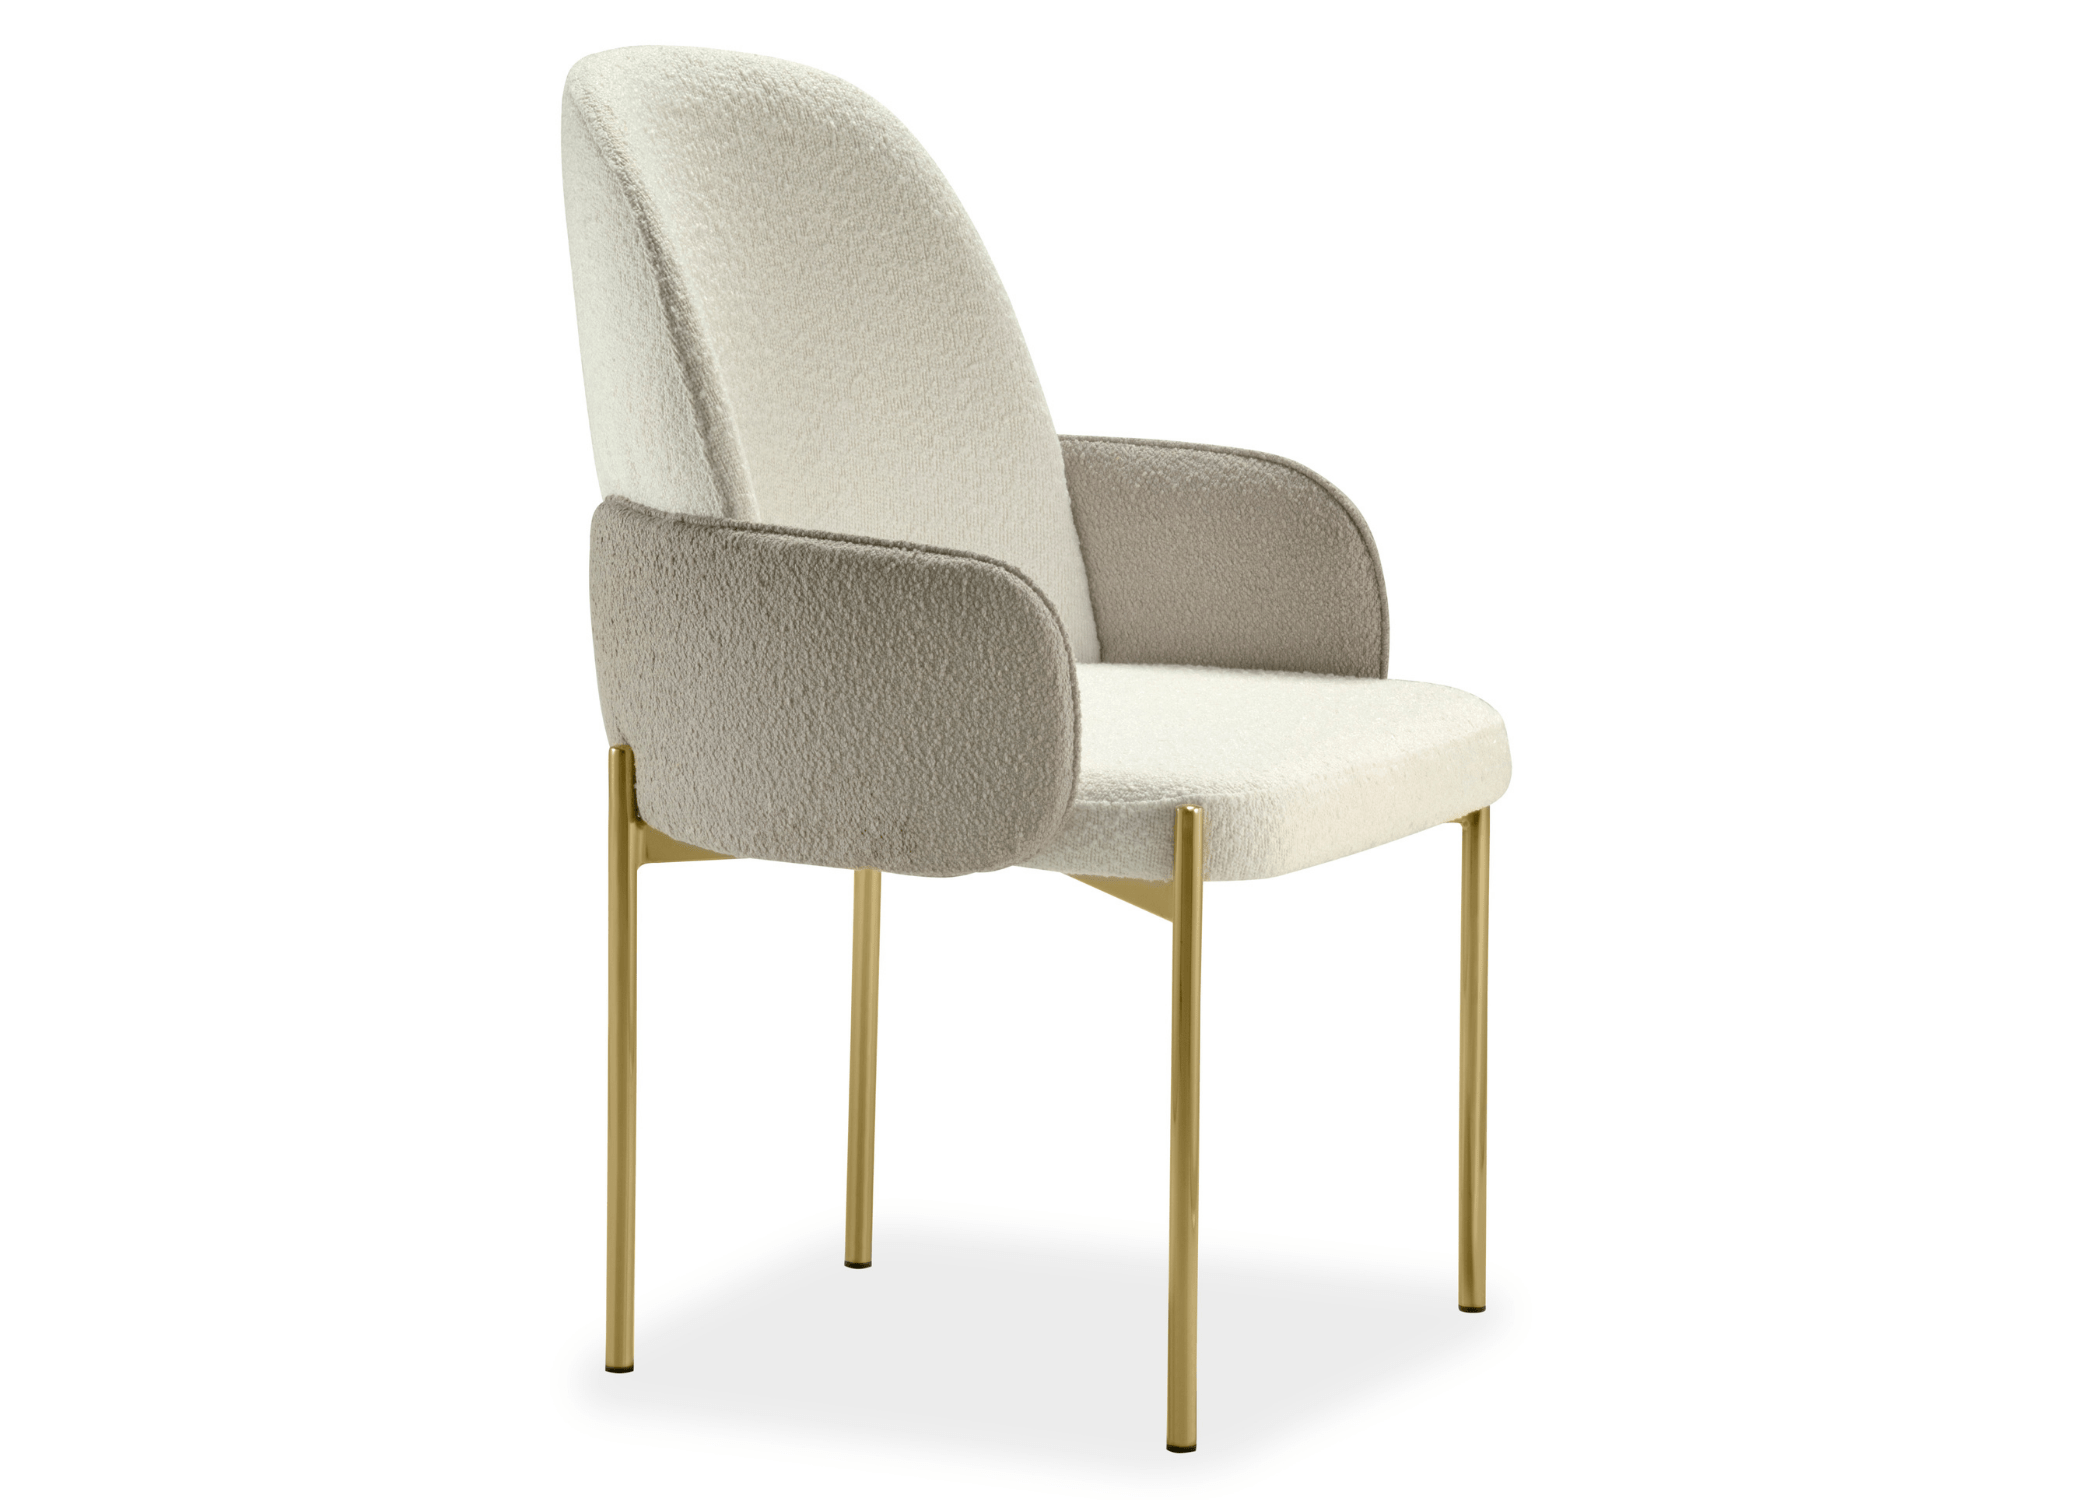 Cadeira Gala em design de interiores, com detalhes elegantes nos braços.